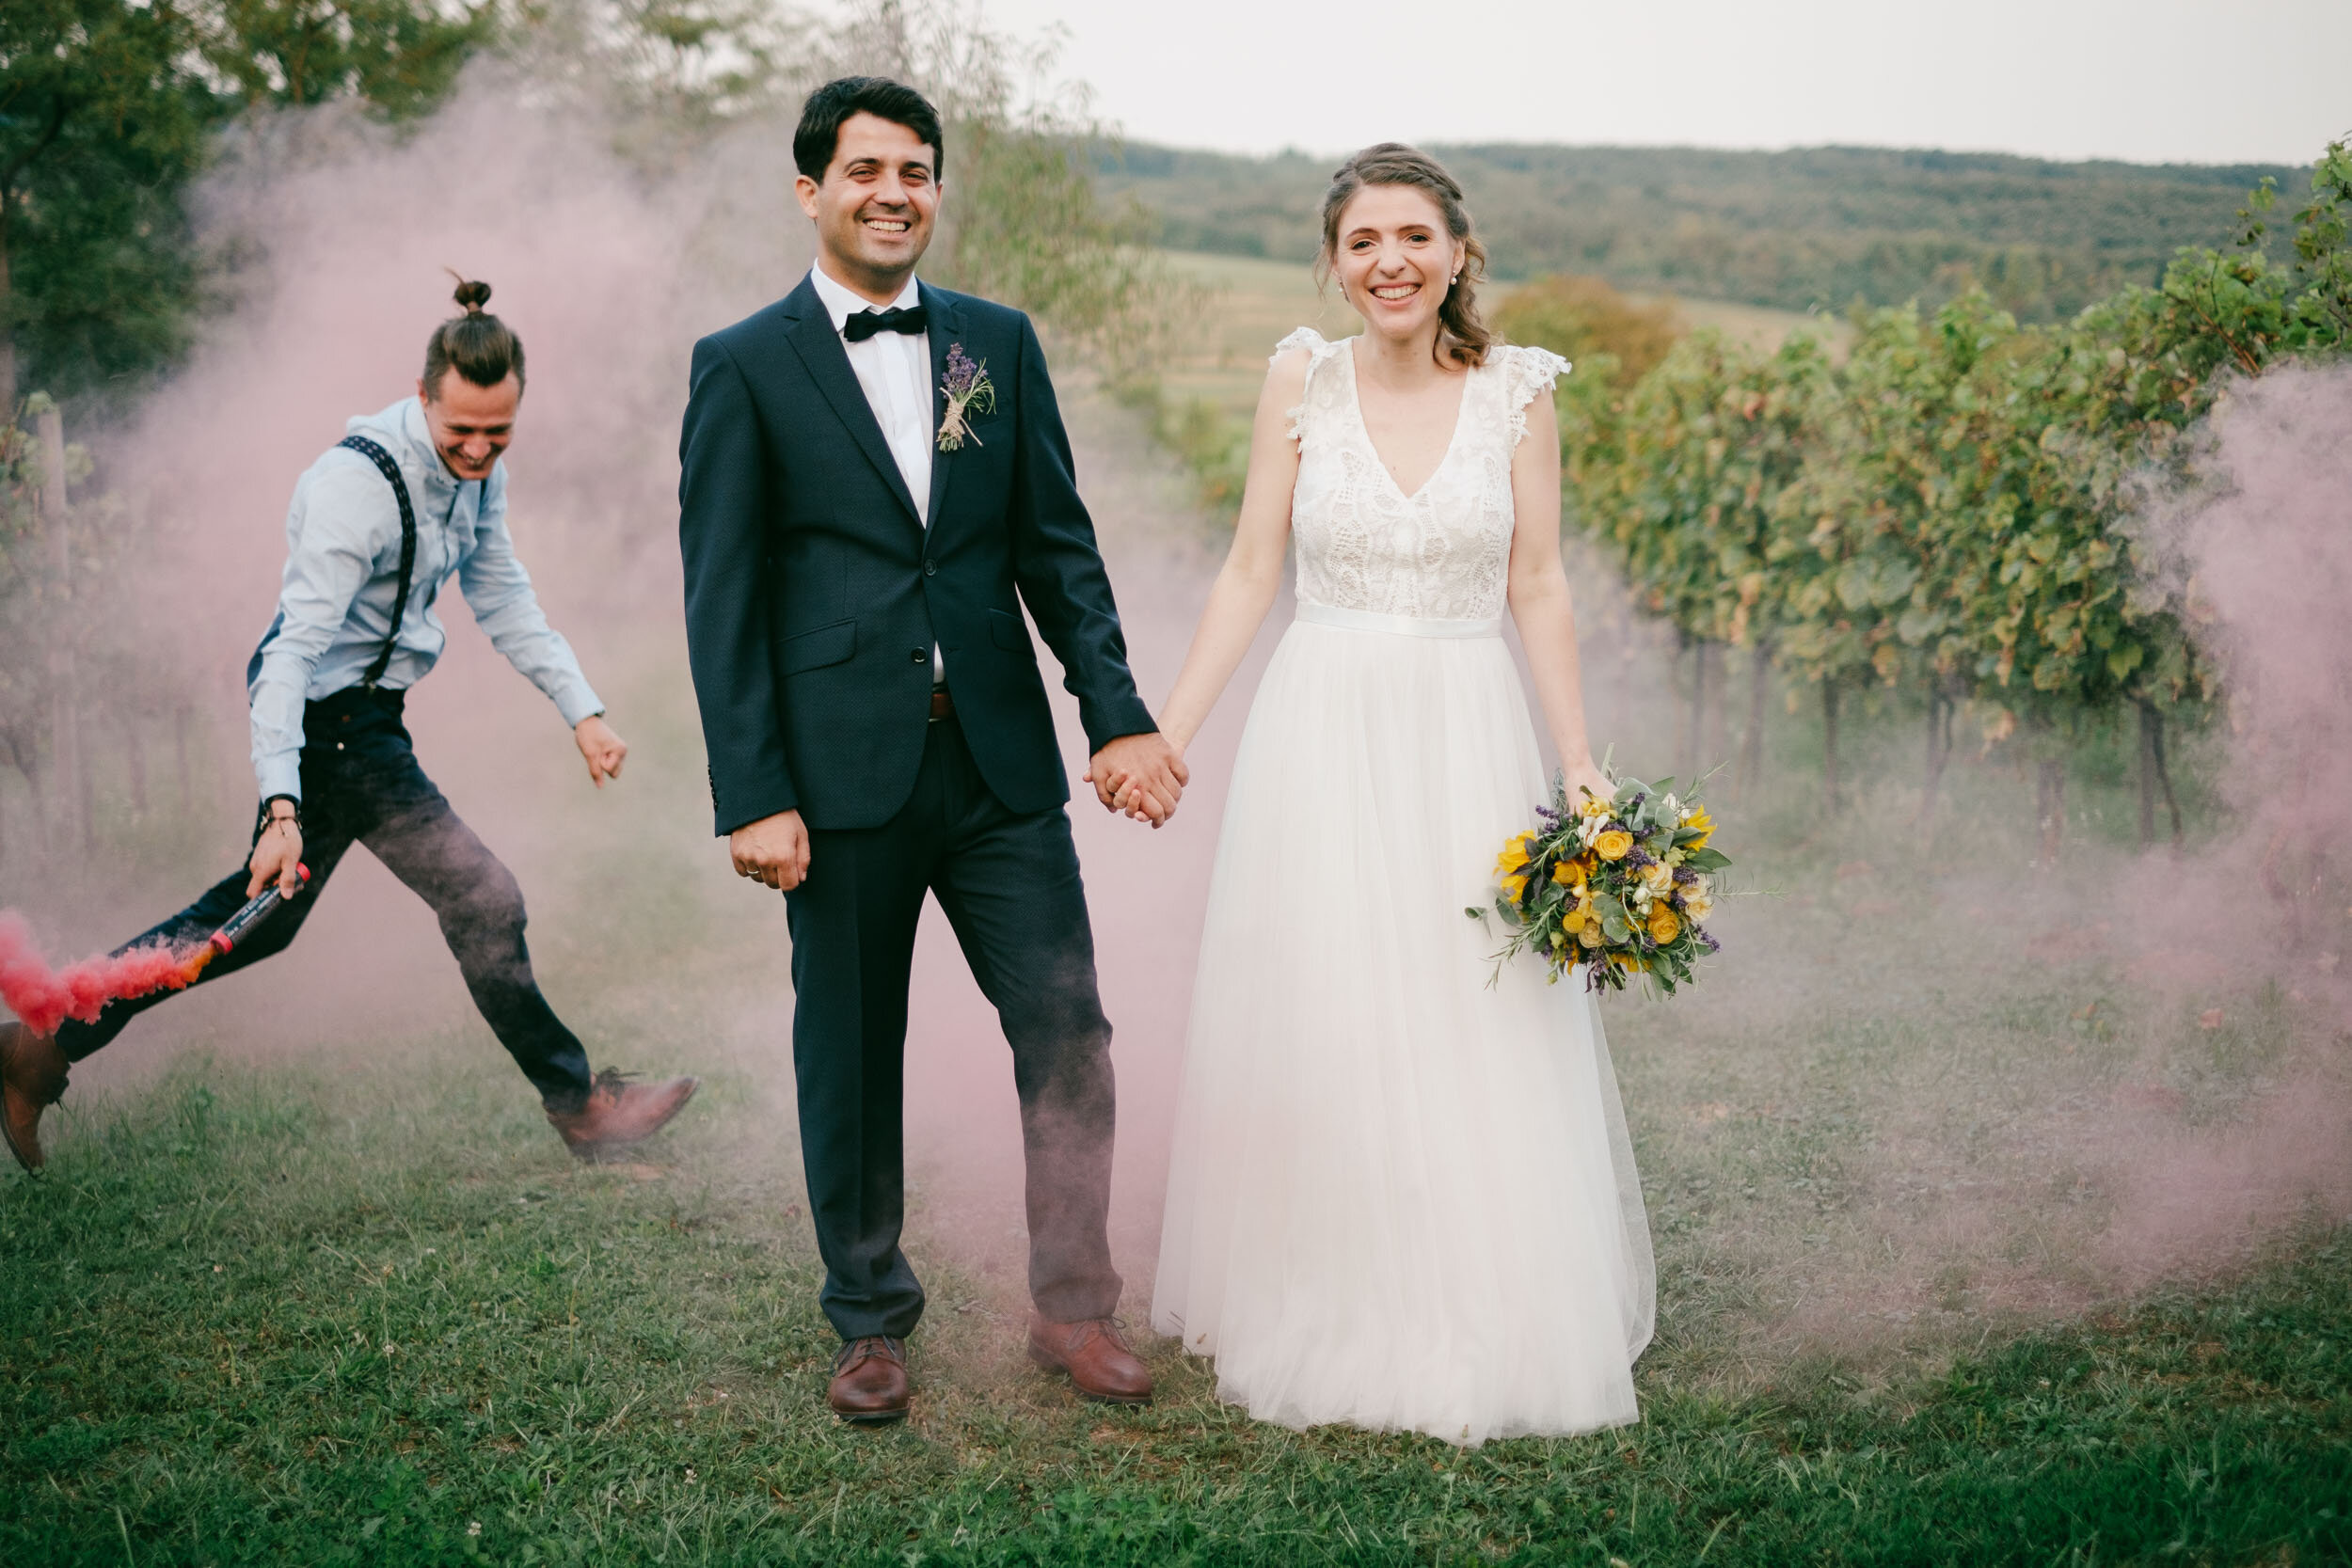 Színes füstbomba - füstgránát - az esküvői fotózáson (Polány, Babérliget Kúria)